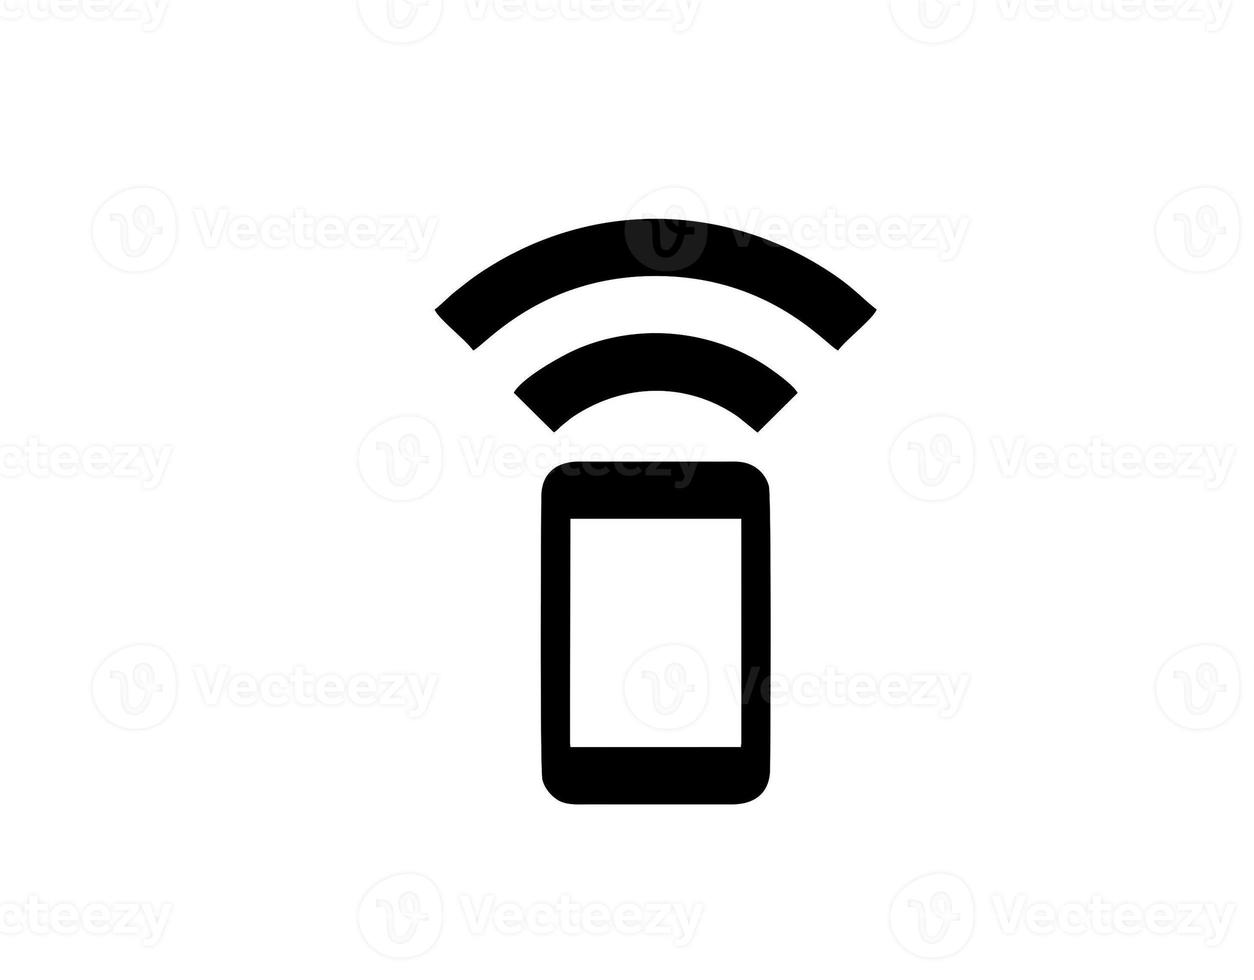 símbolo de ícone de som de alto-falante no fundo branco foto